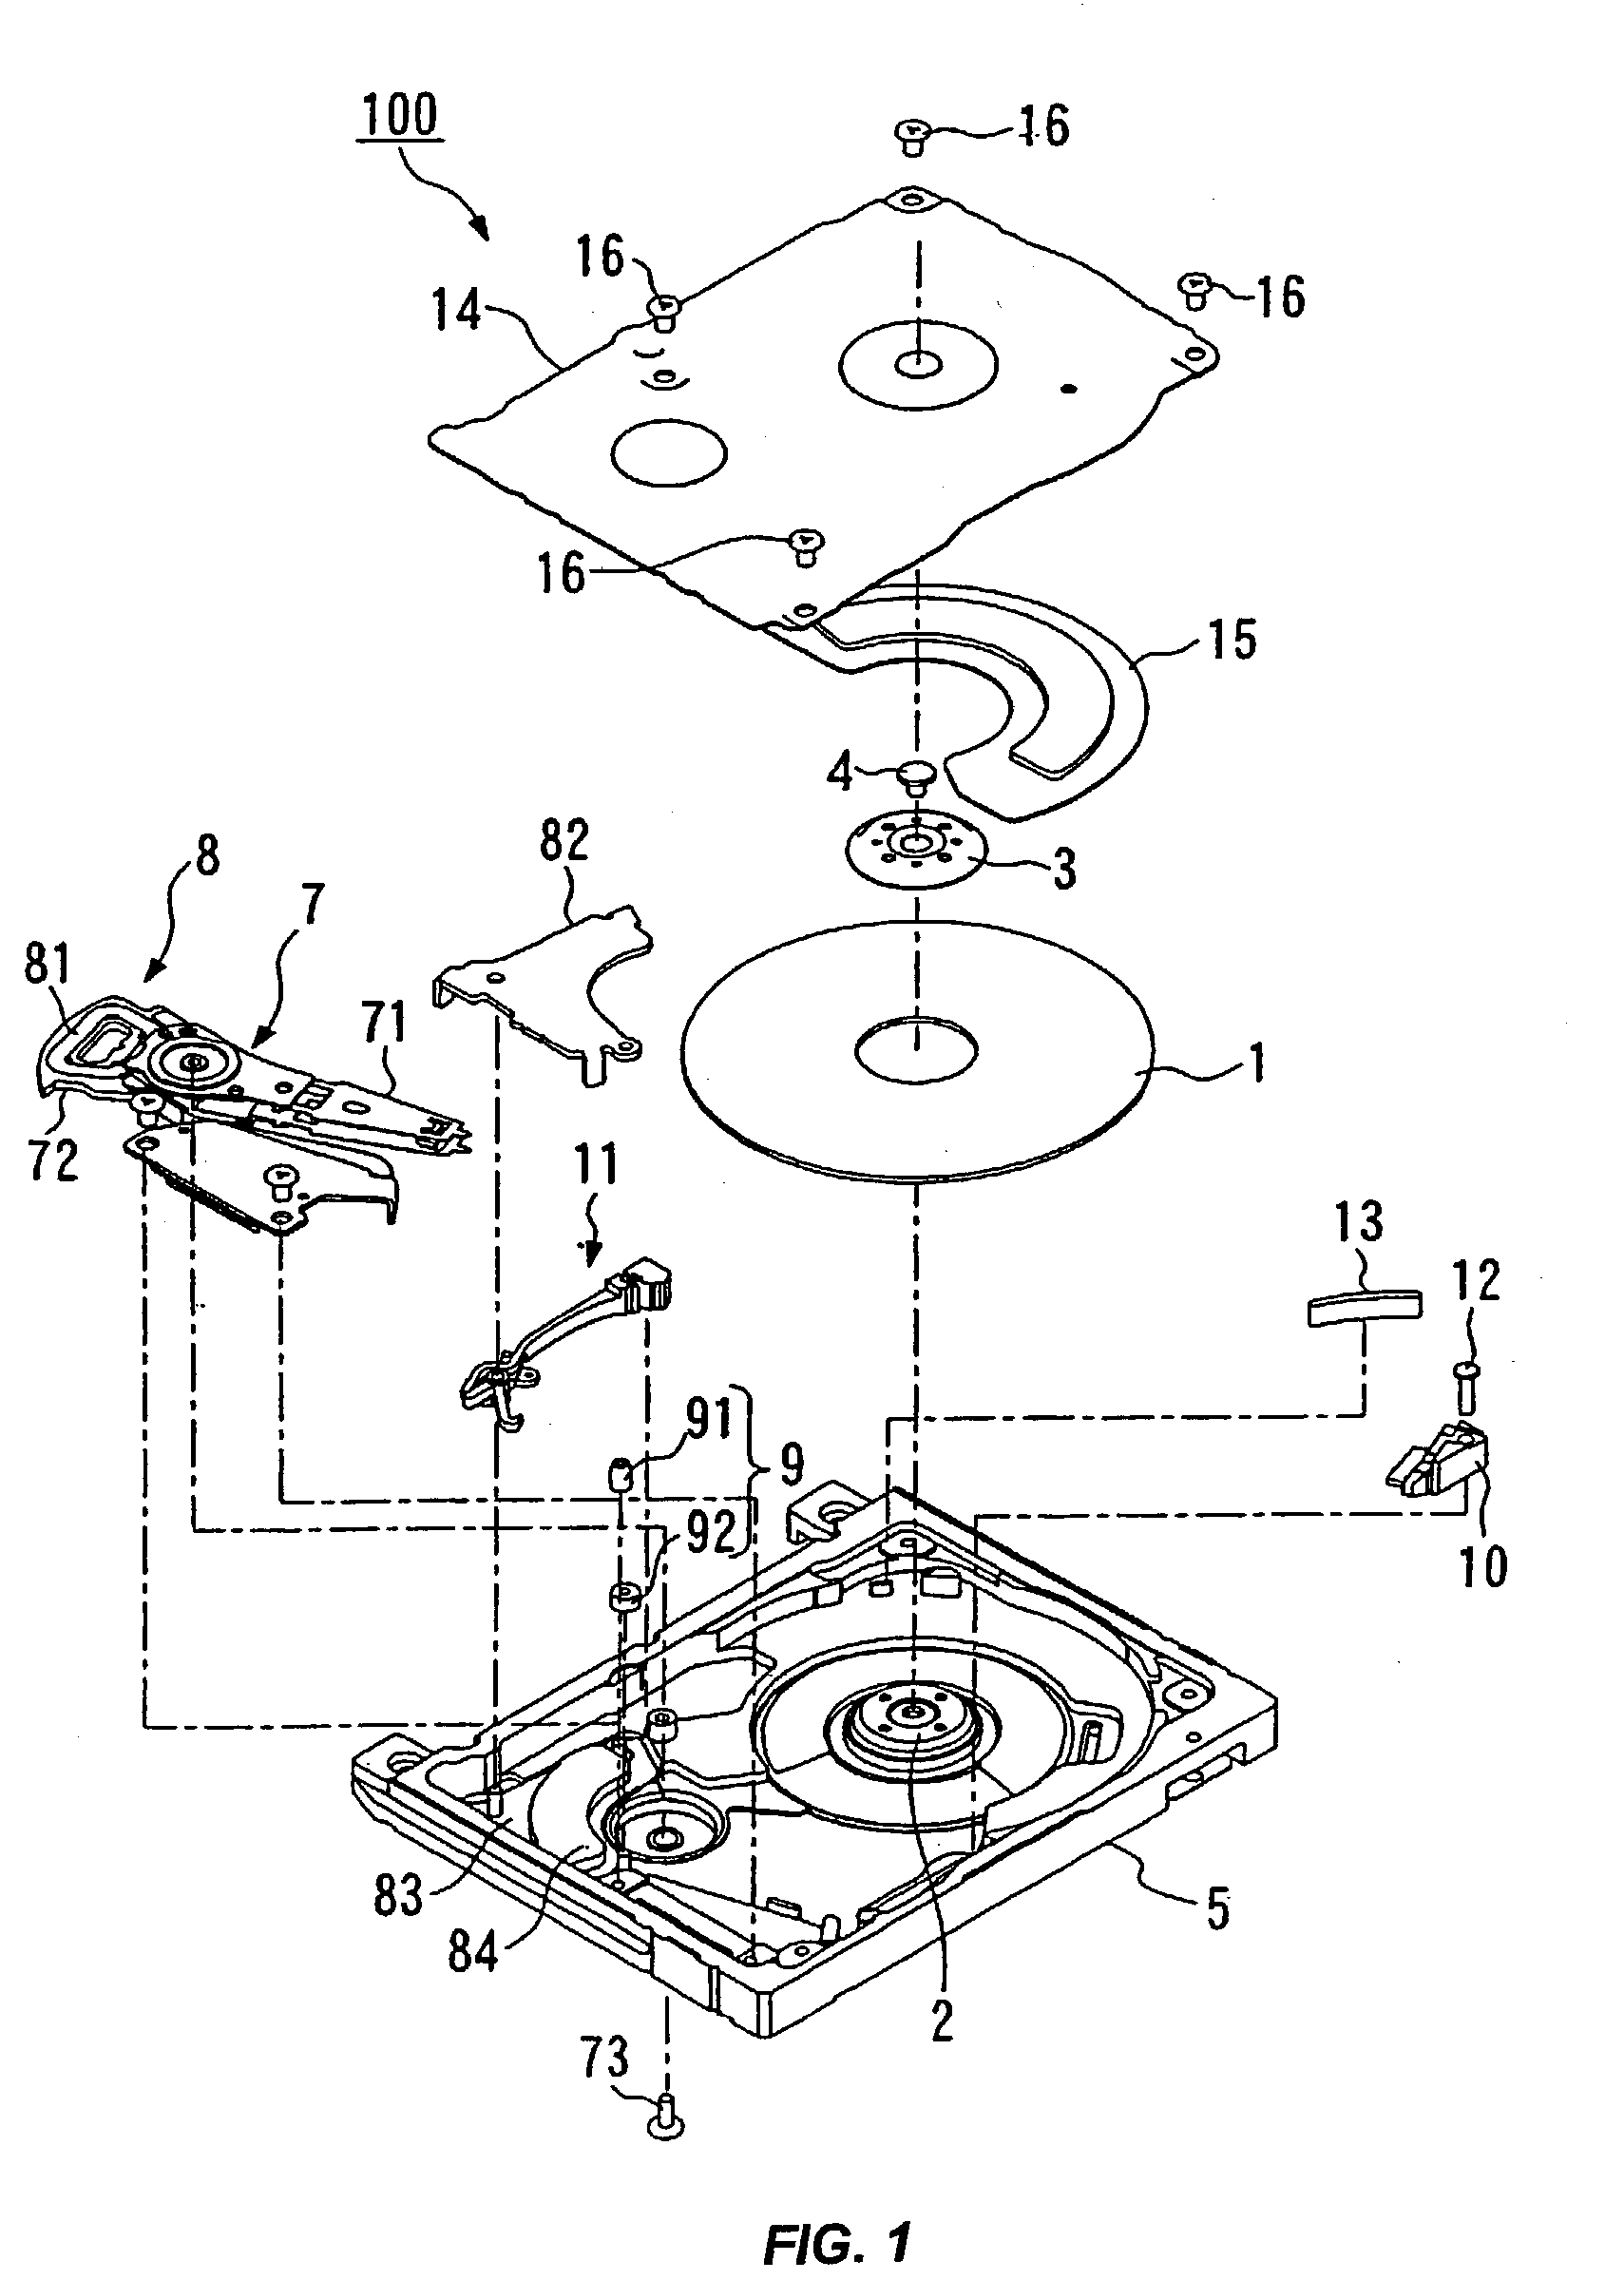 Disk drive device, actuator lock mechanism, inertia latch mechanism and inertia lever